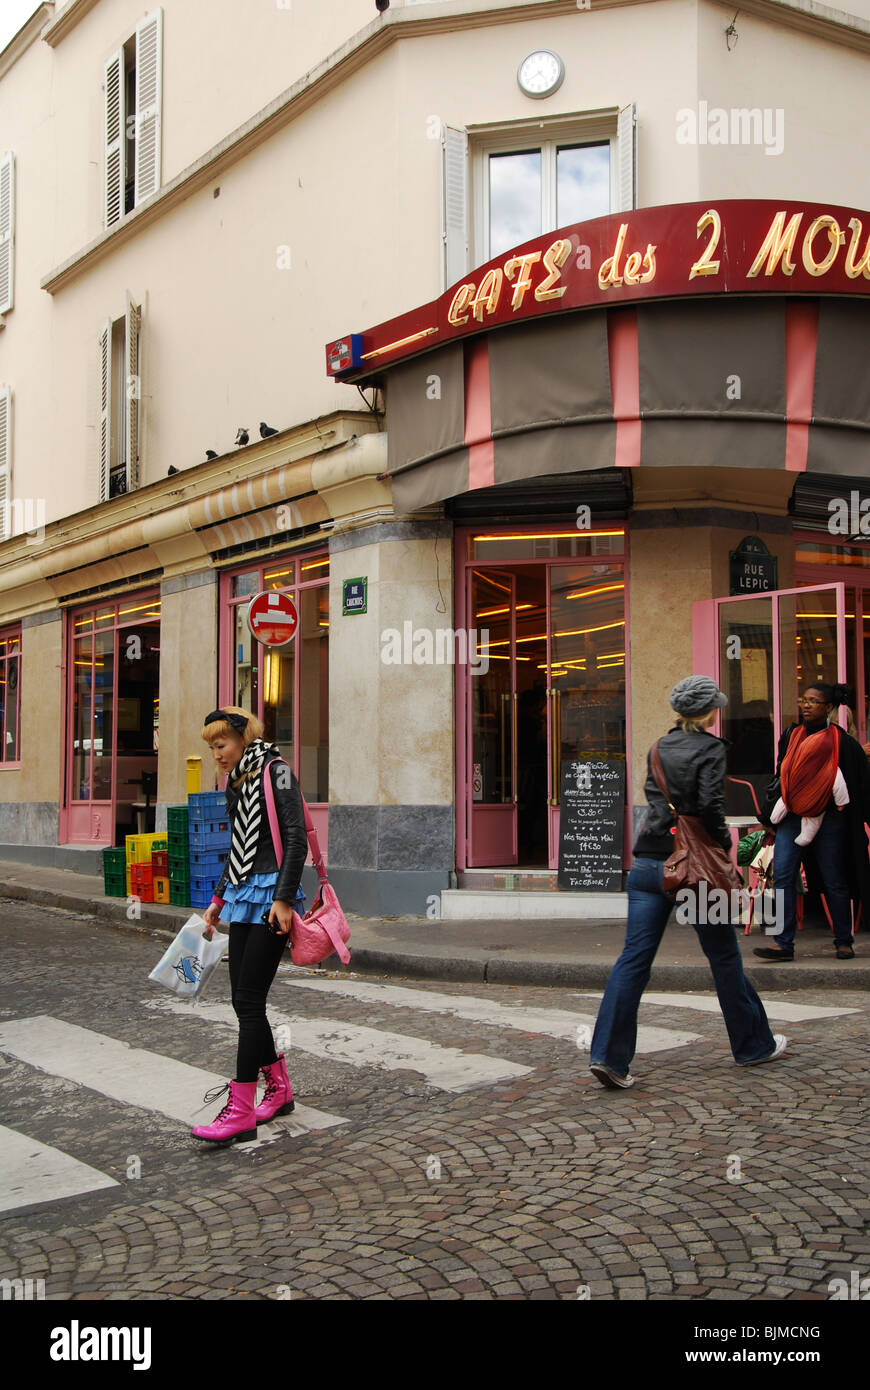 Front of Cafe des 2 Moulins famous for Amelie film Paris France Stock Photo